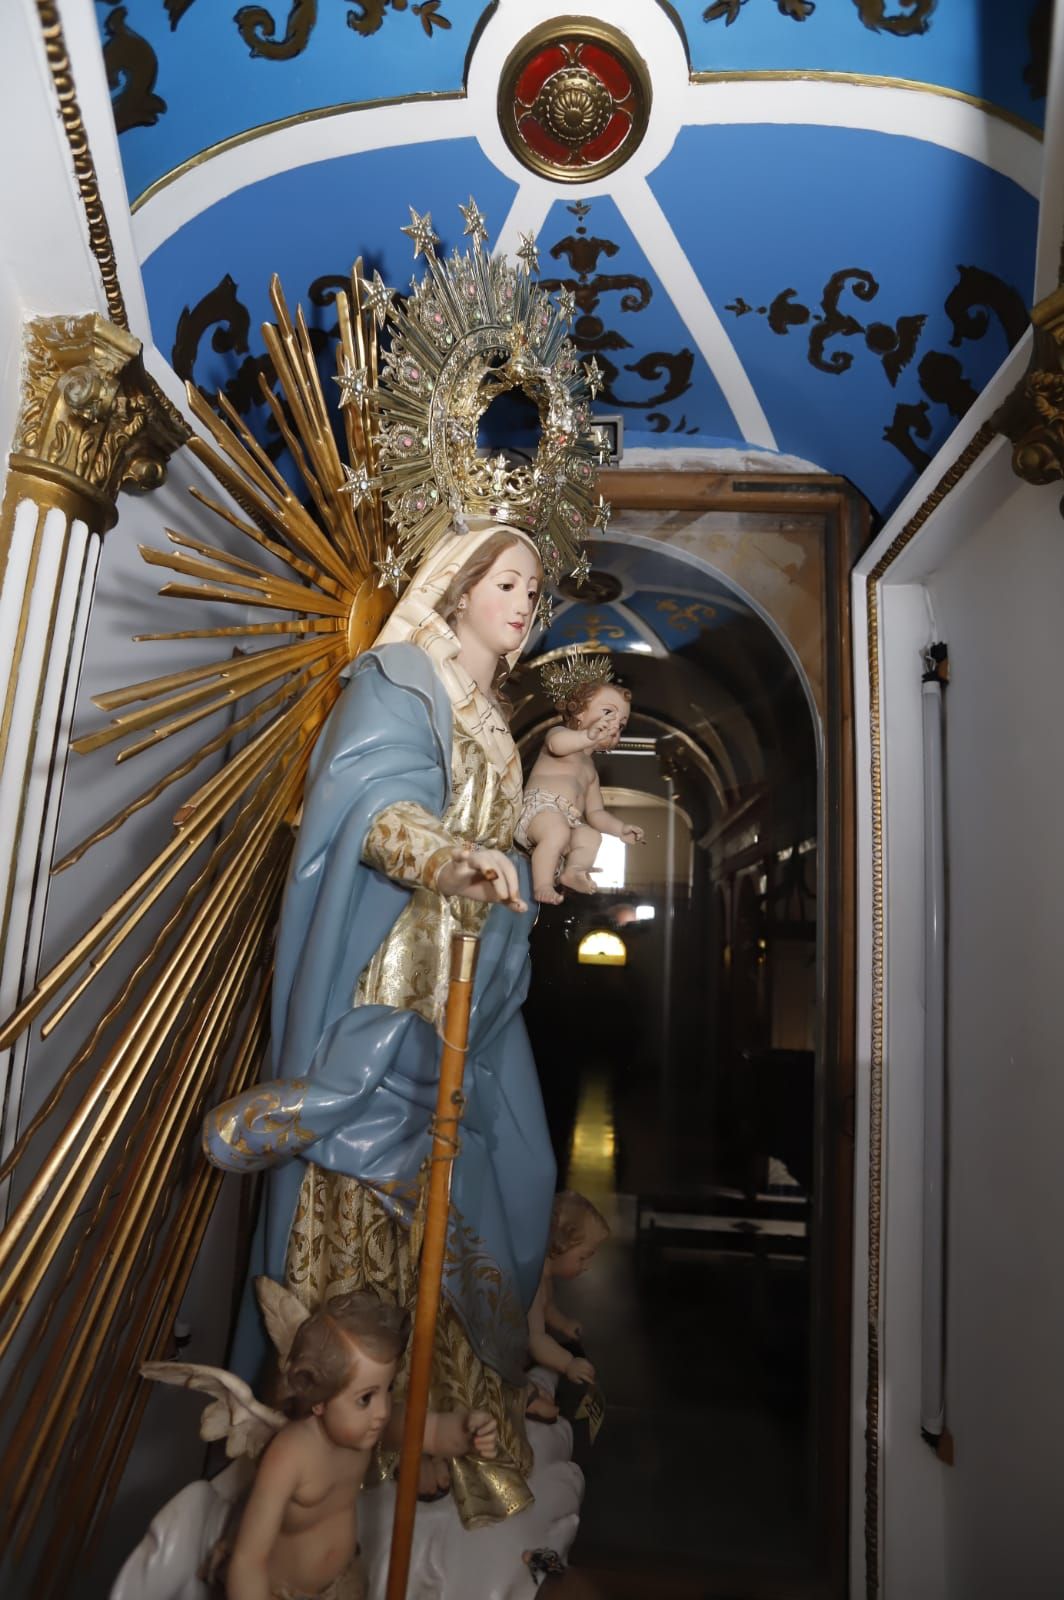 Roban en la parroquia Nuestra Señora del Rosario de Fontanars dels Alforins